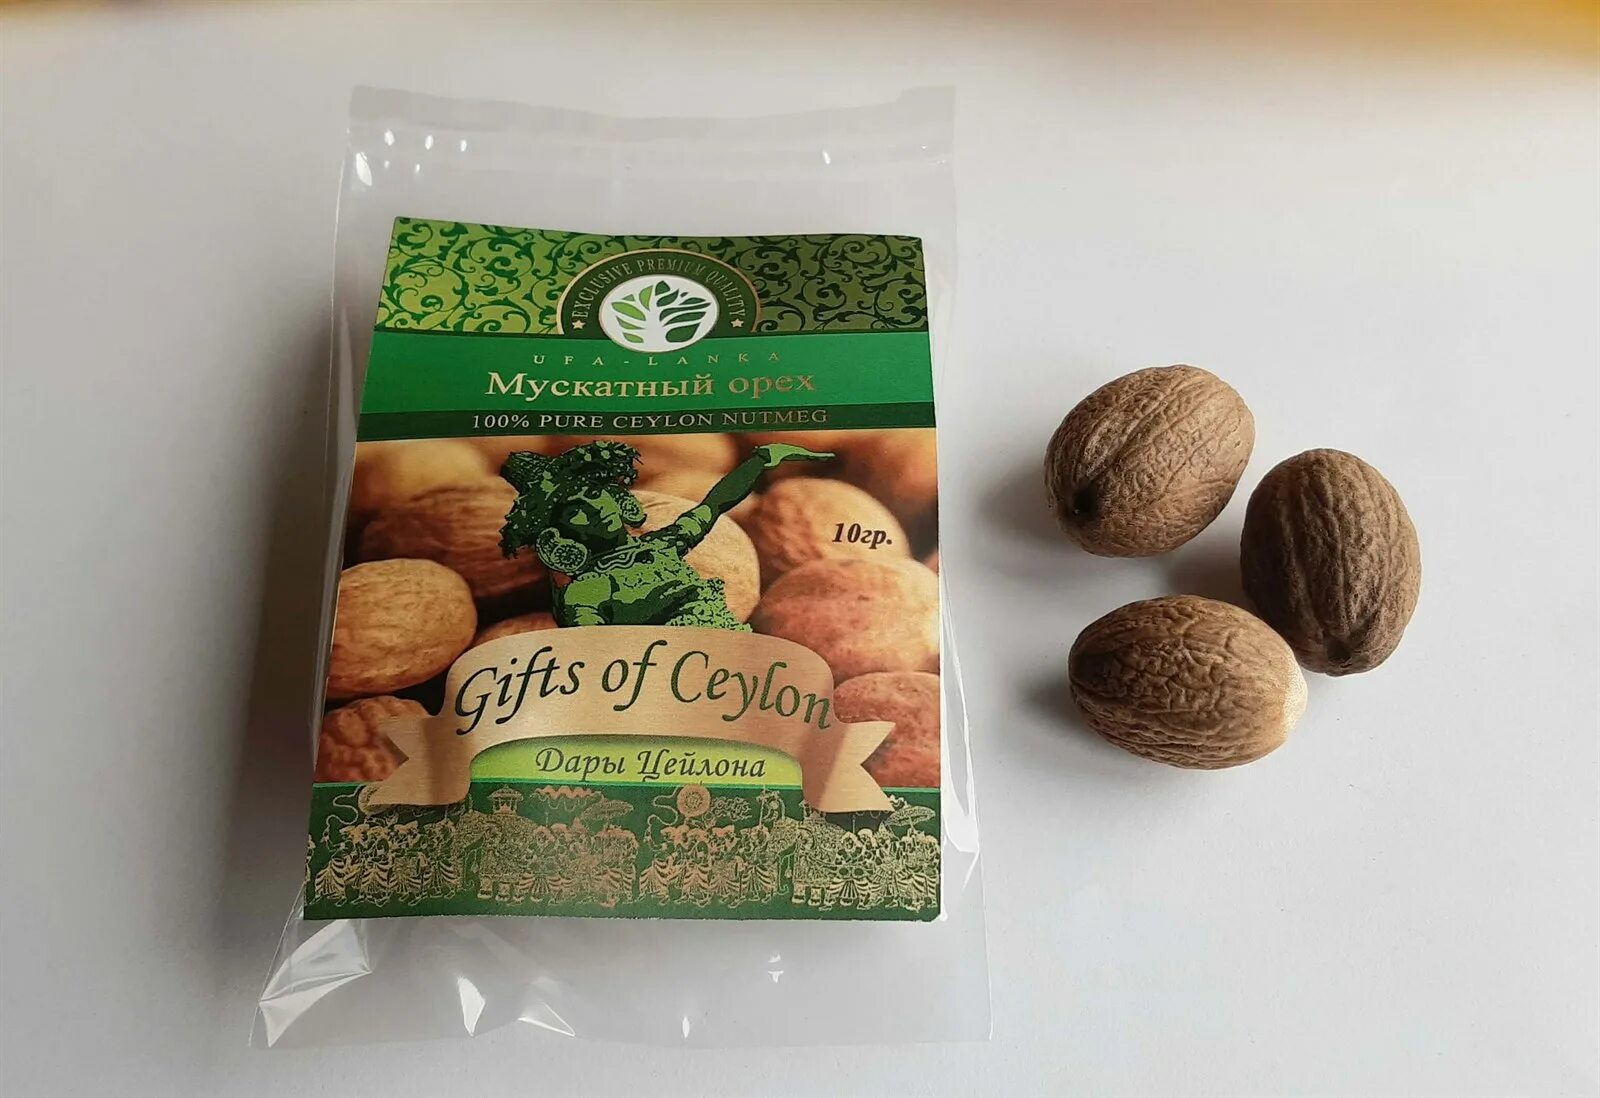 Купить орехи в нижнем новгороде. Nutmeg — мускатный орех. Макасарский мускатный орех. Мускатный орех в магните. Мускатный орех упаковка.